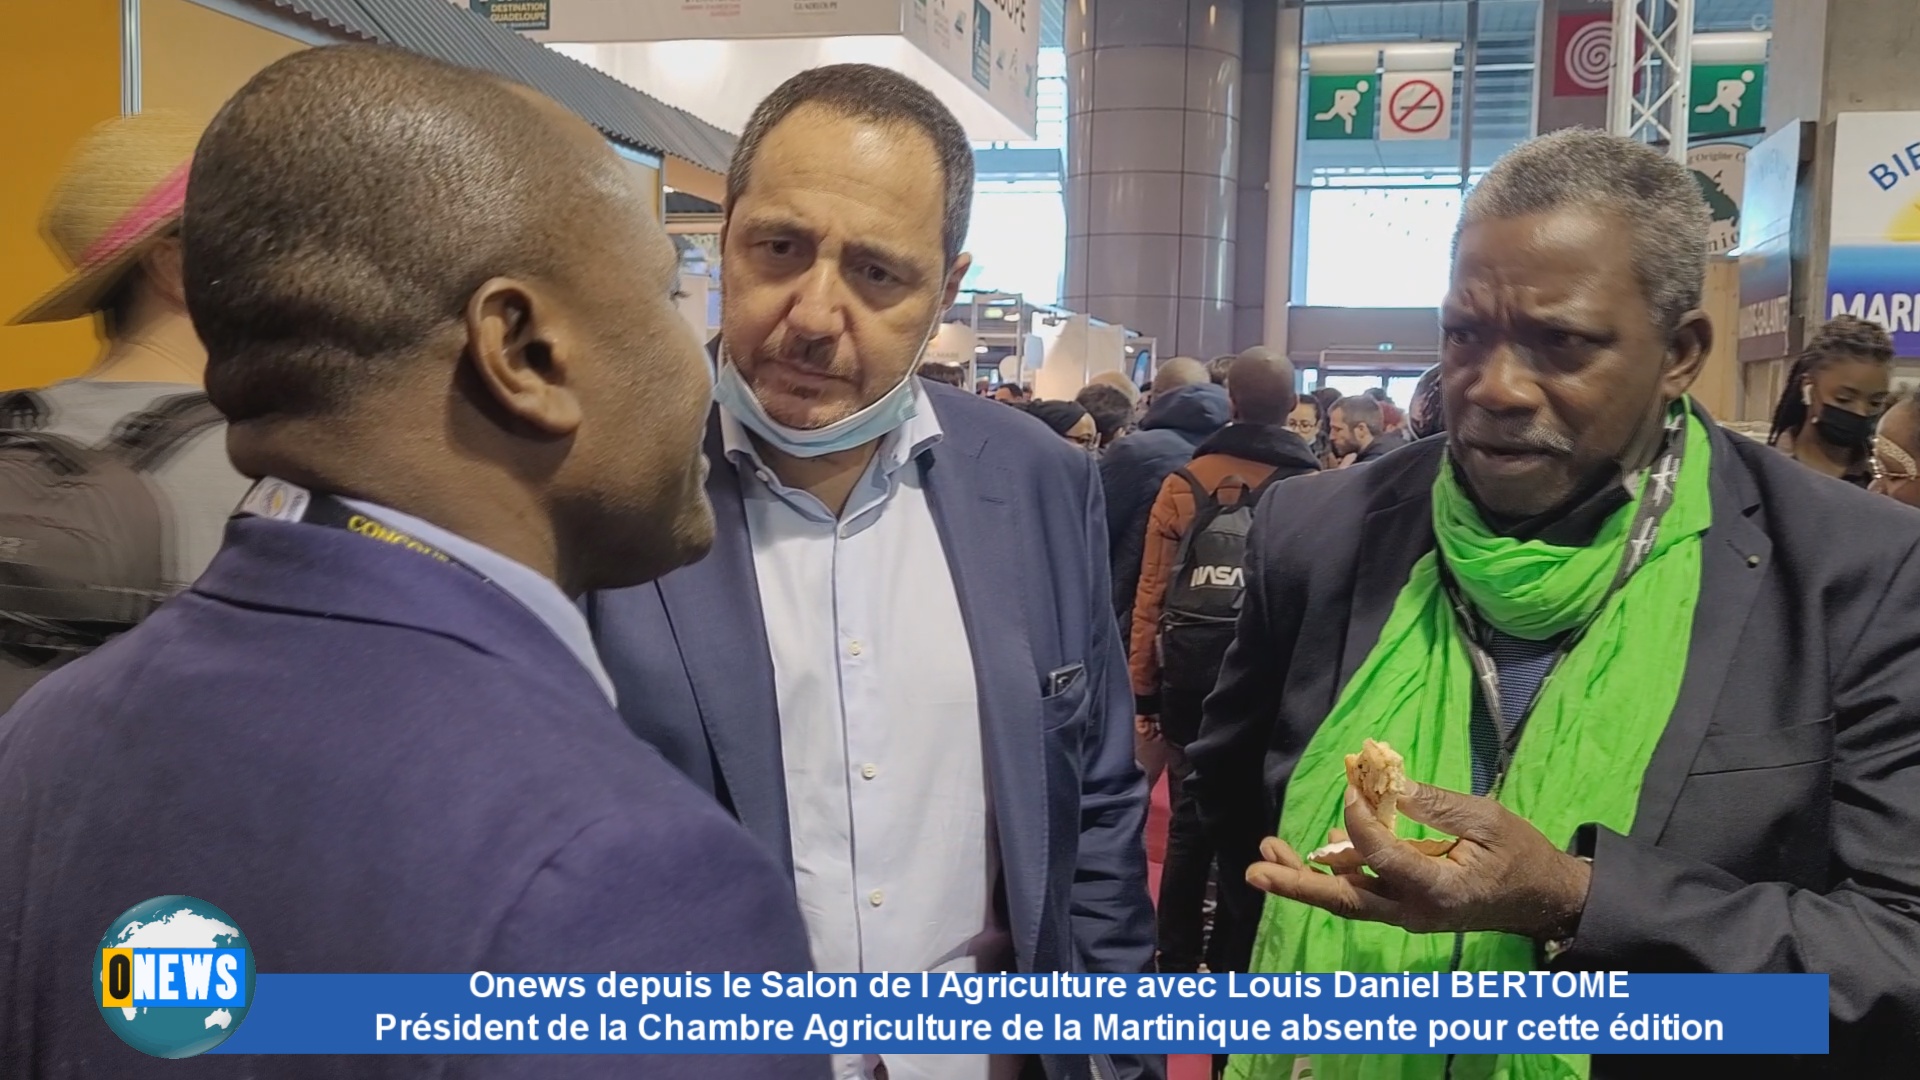 [Vidéo] Onews depuis le salon de l Agriculture avec Louis Daniel BERTOME Président de la Chambre Agriculture de la Martinique absente pour cette édition